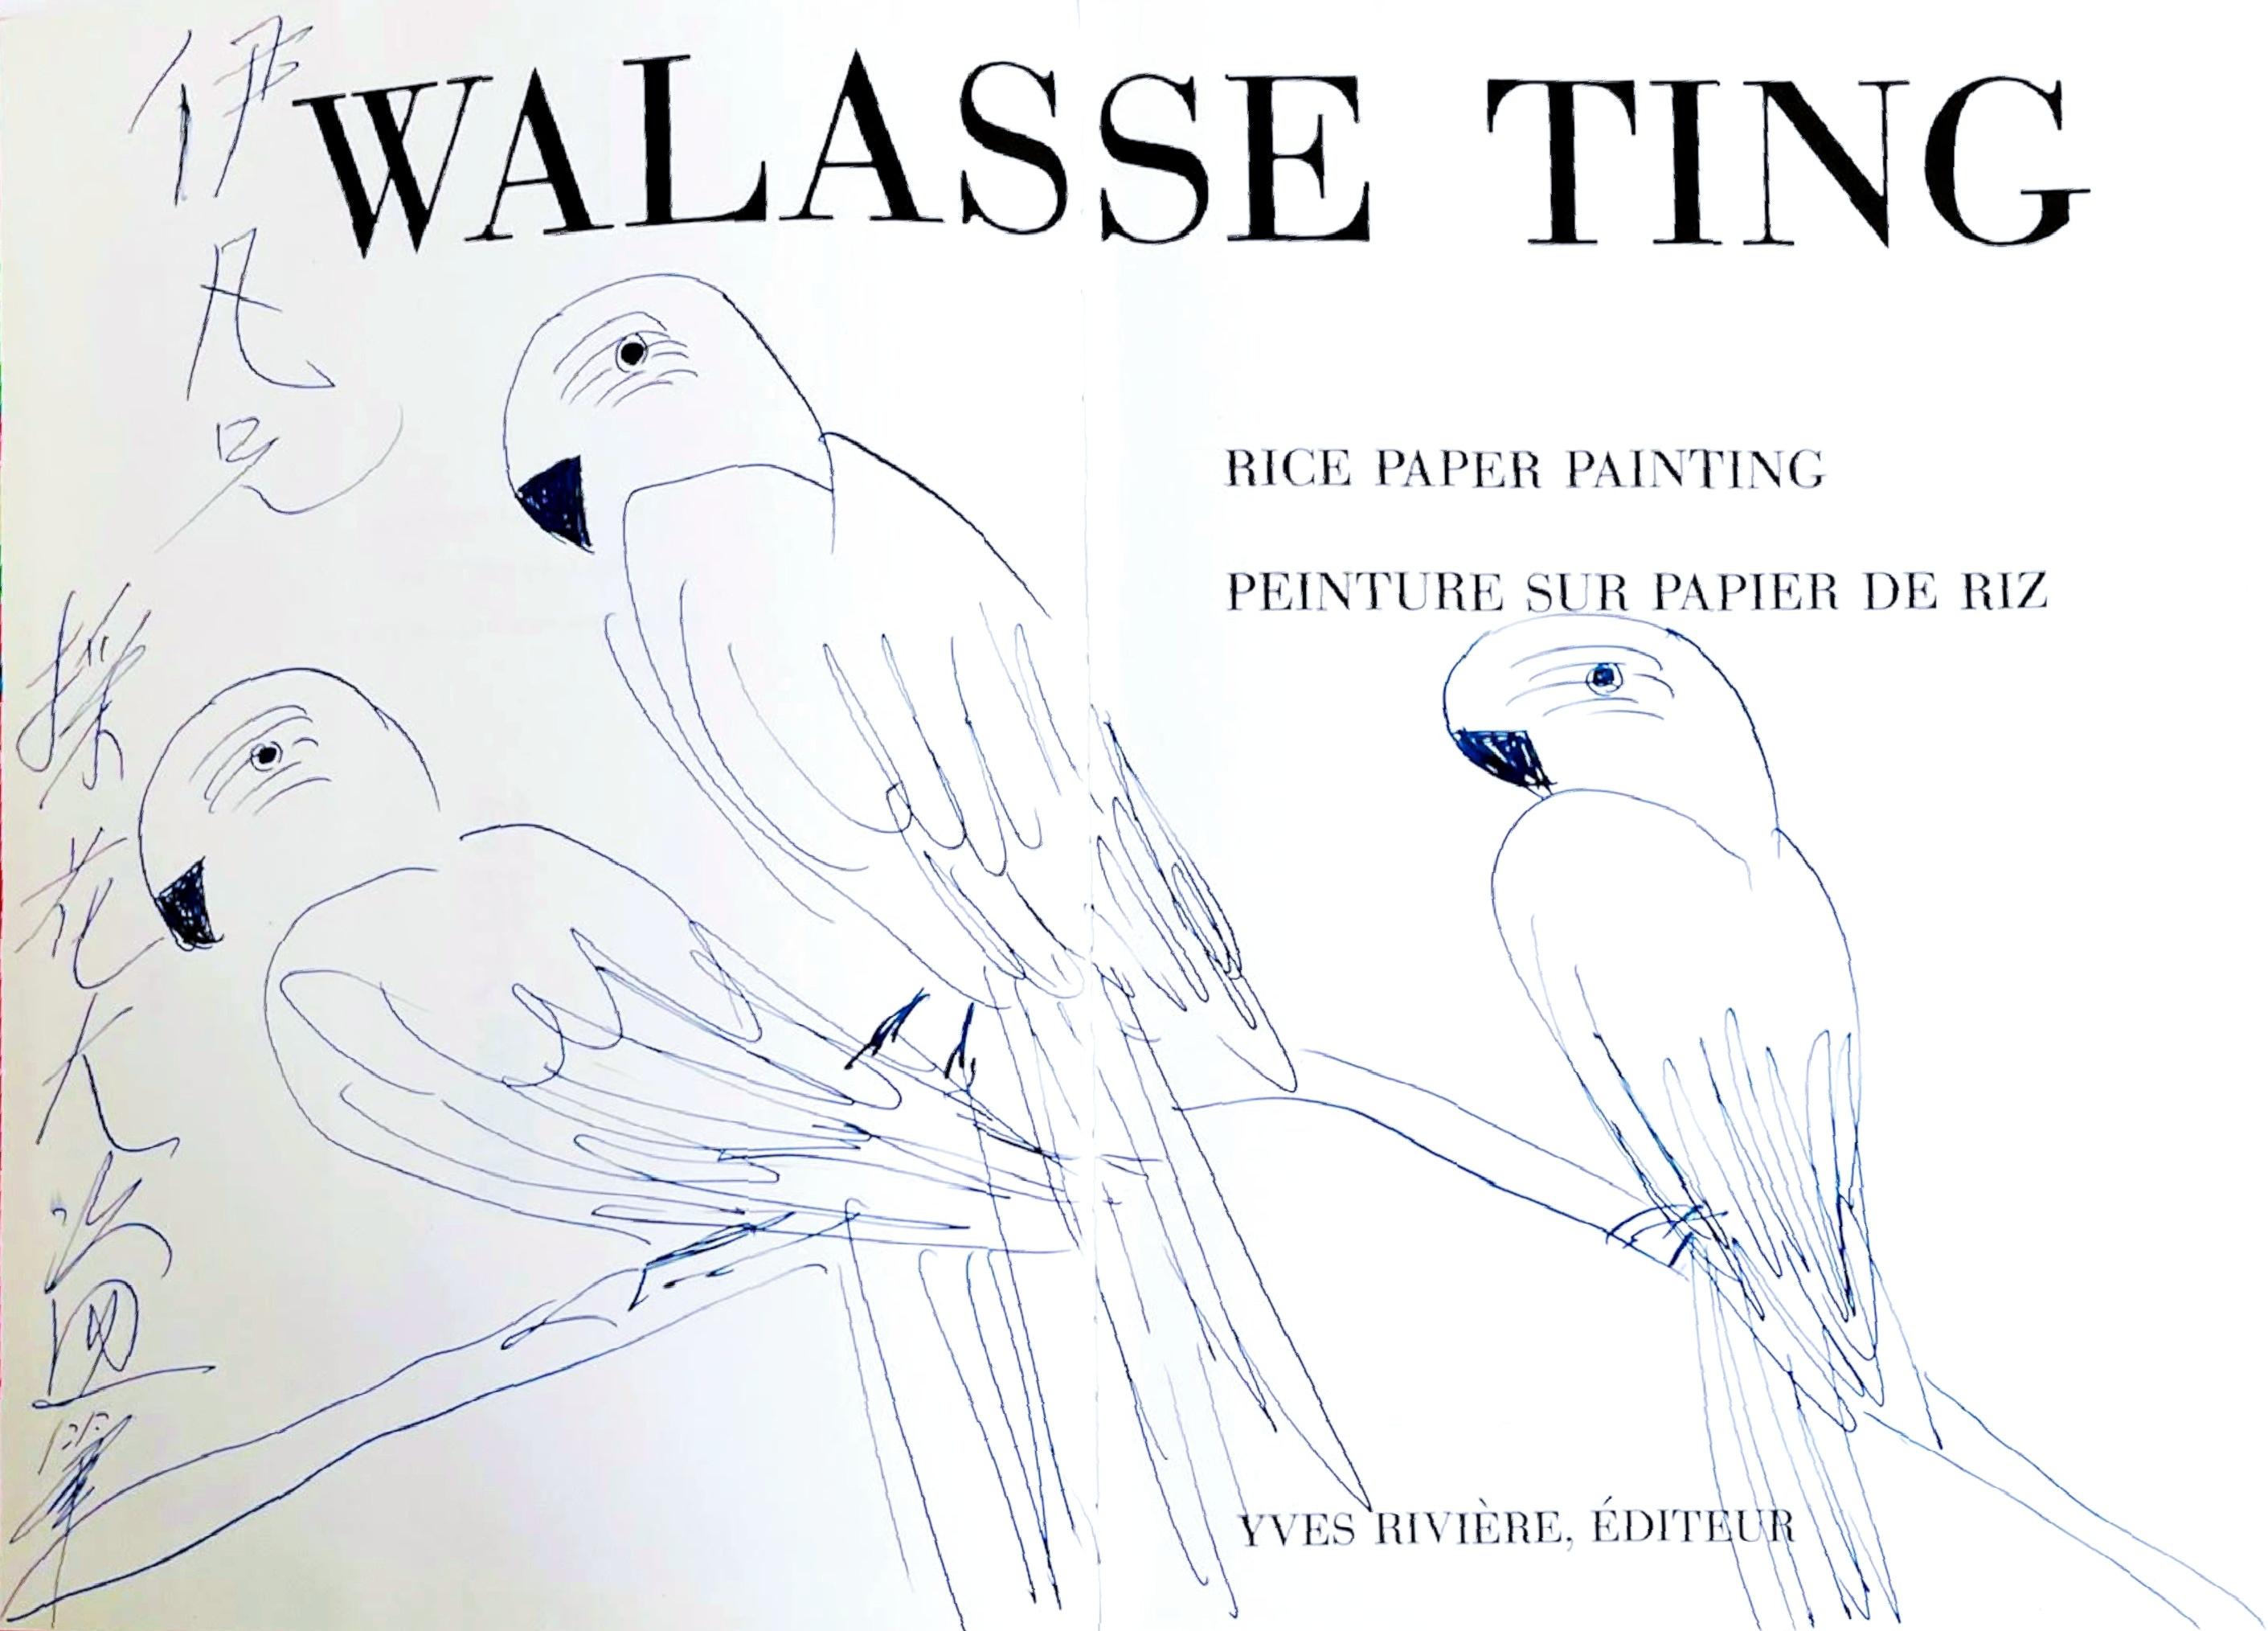 Animal Art Walasse Ting - dessin original de trois perroquets dans une monographie de célèbre artiste chinois